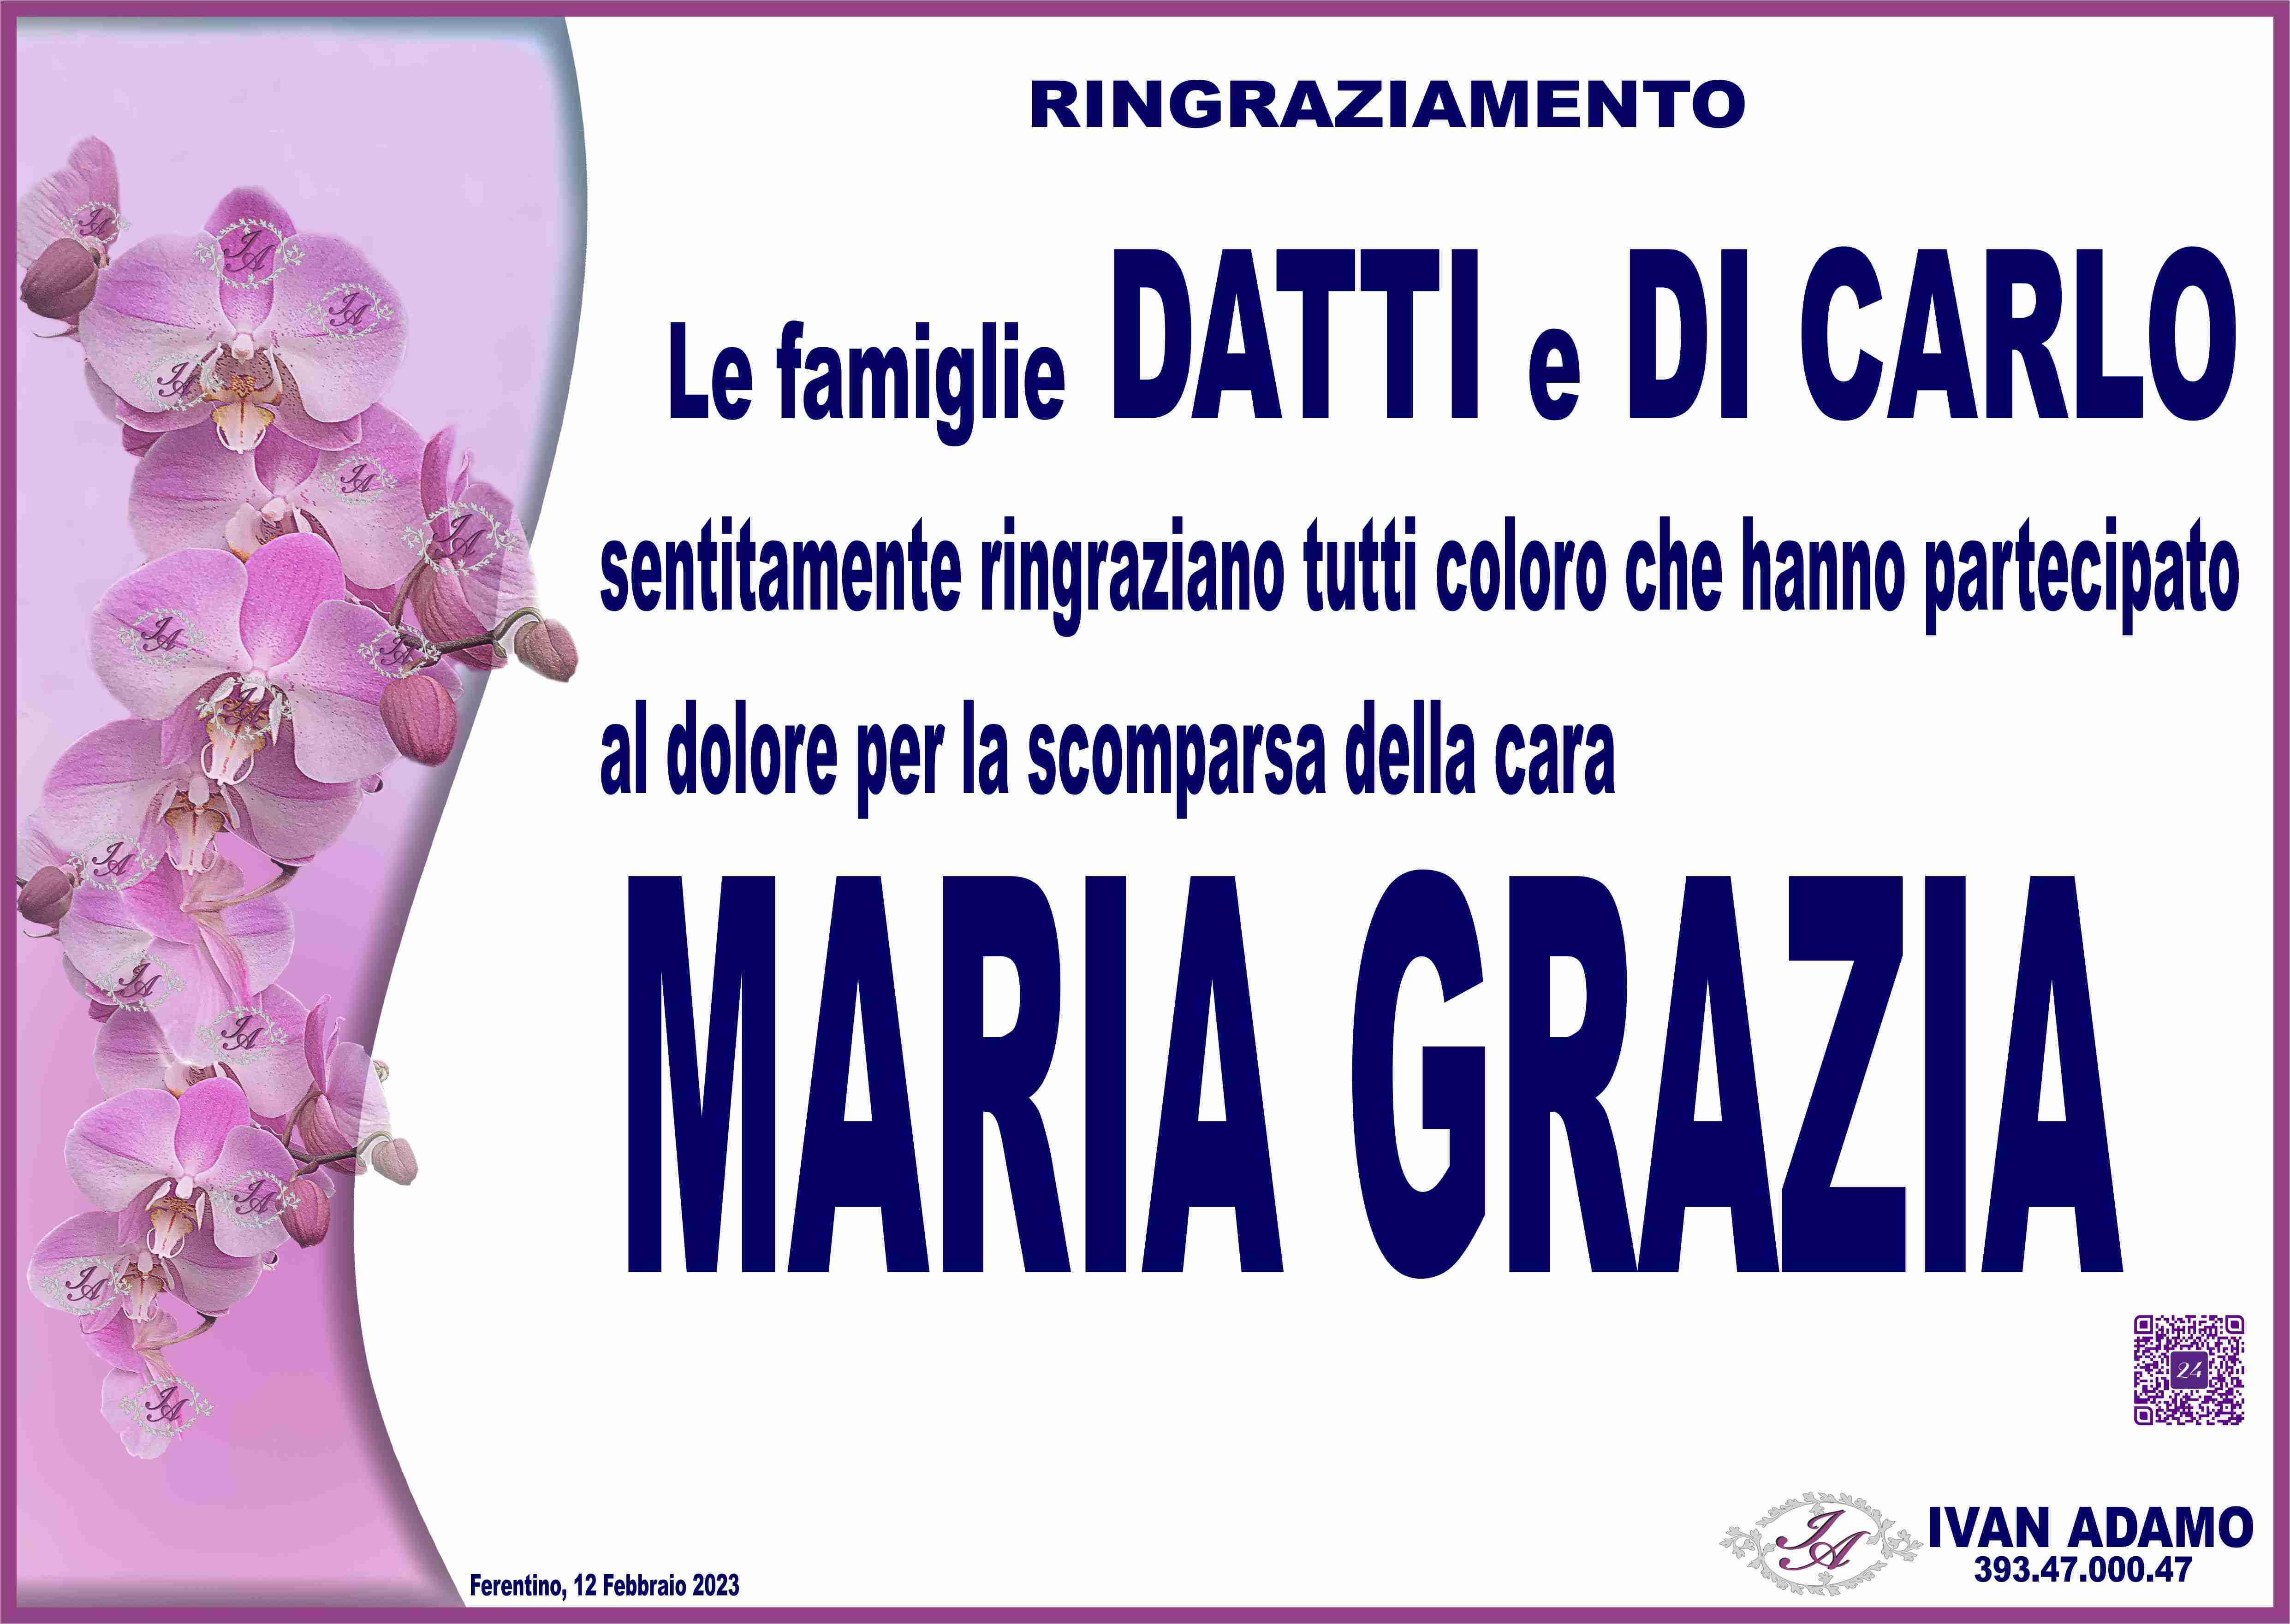 Maria Grazia Di Carlo